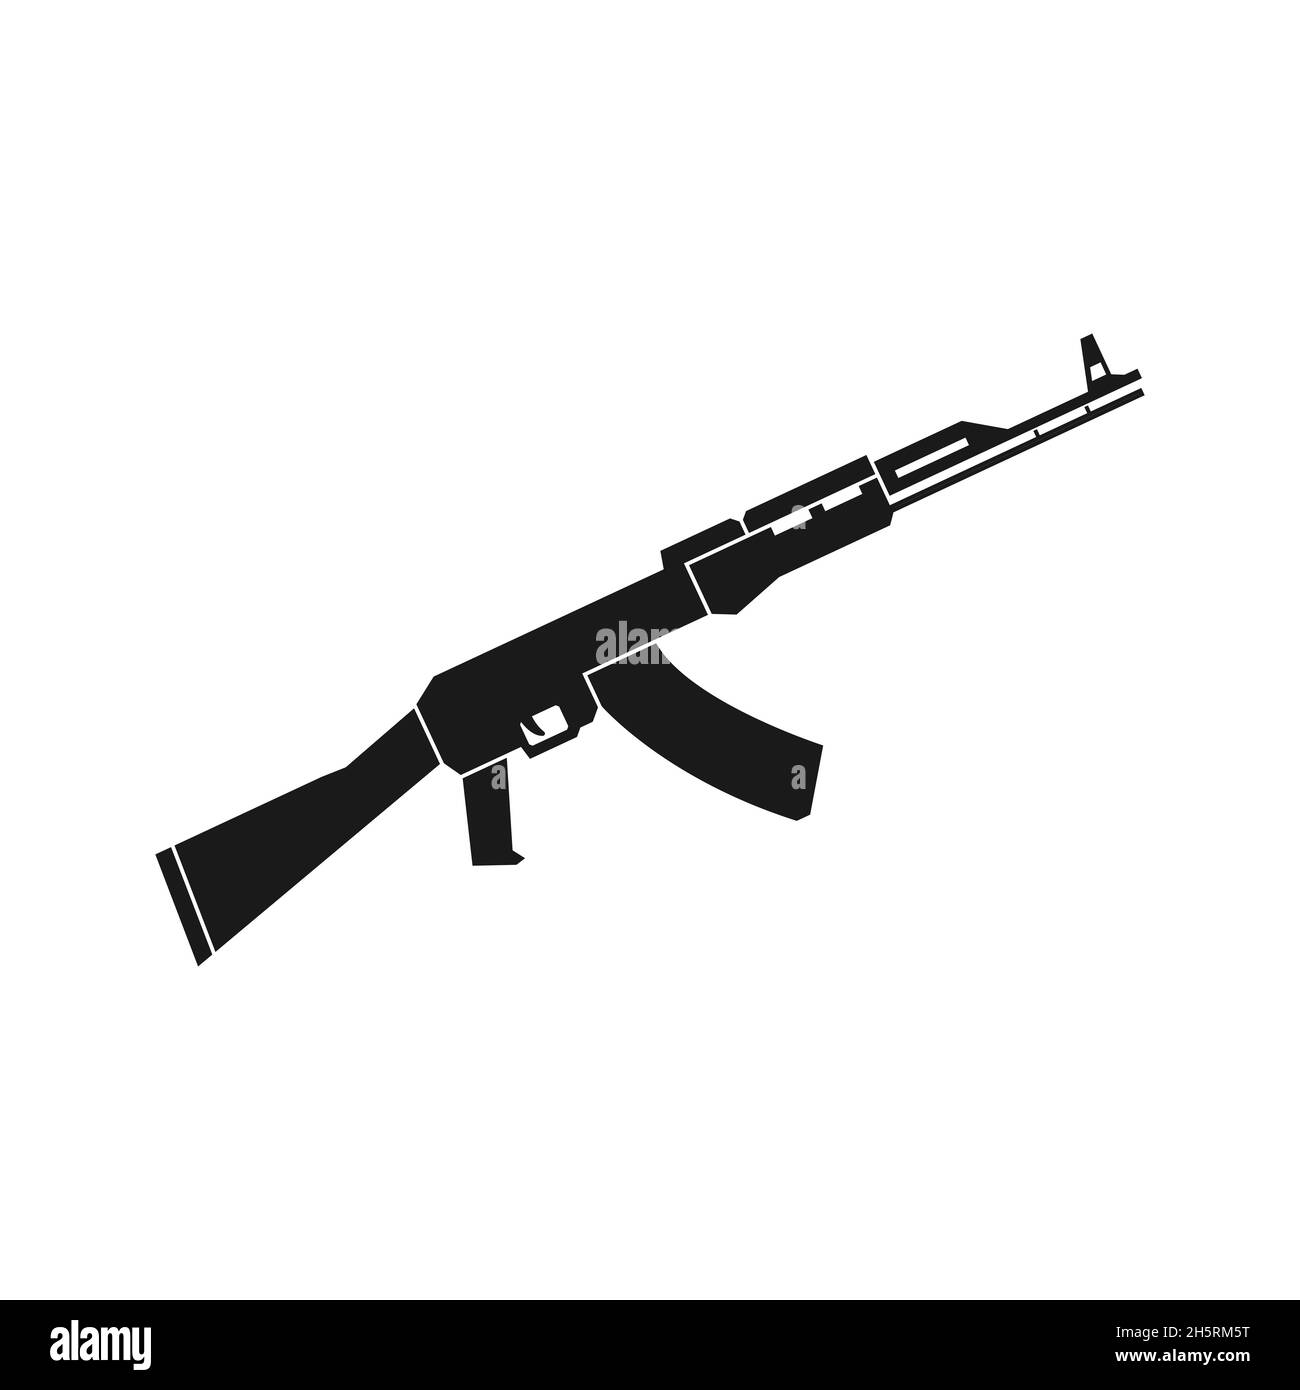 Icône noire d'arme automatique, illustration vectorielle isolée de style plat Illustration de Vecteur